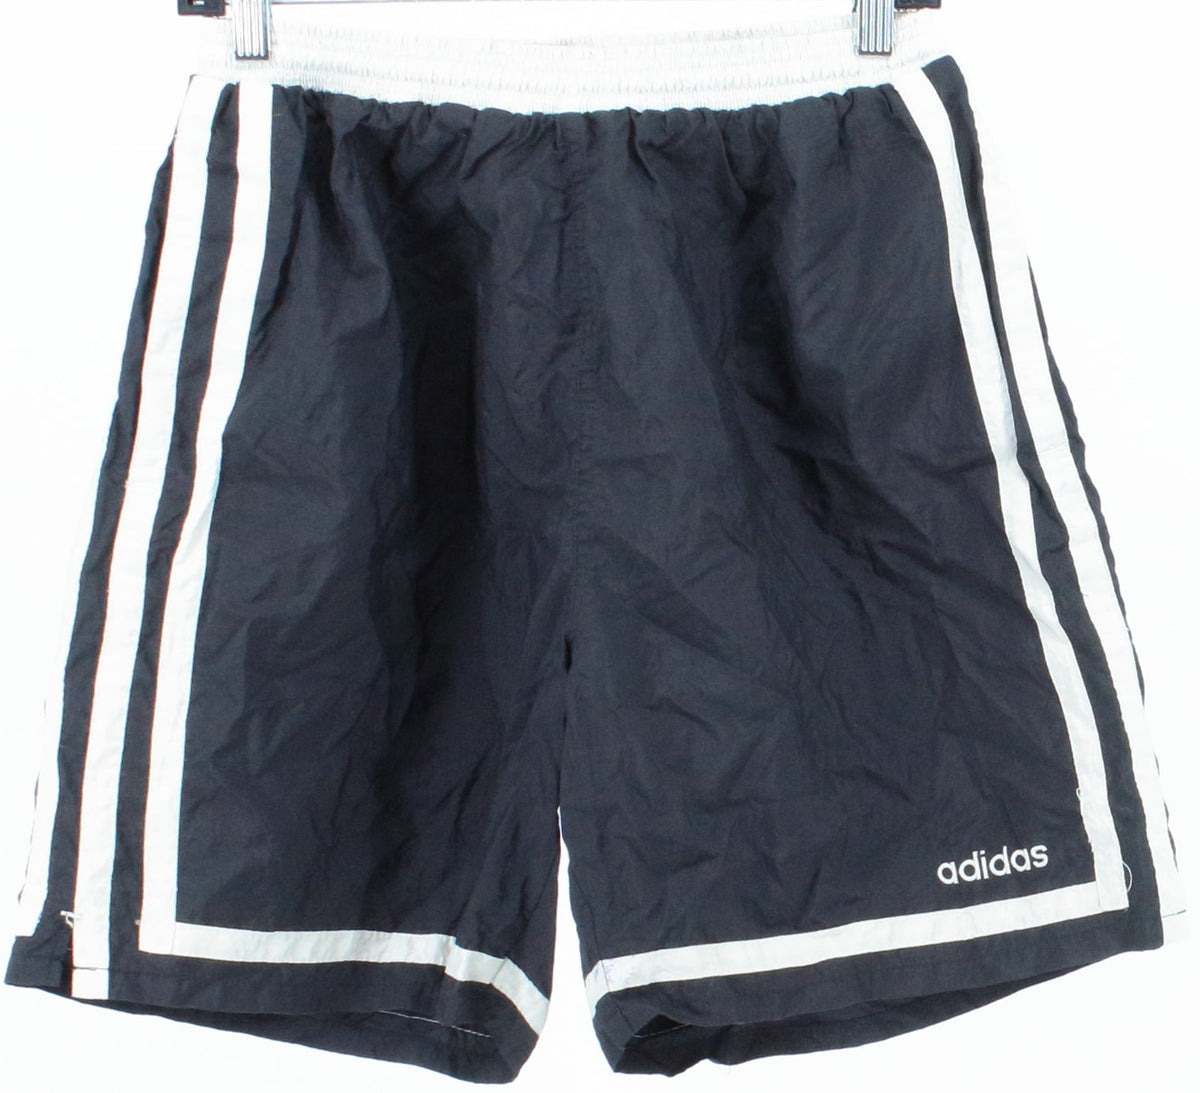 Adidas Black and Off White Nylon Shorts